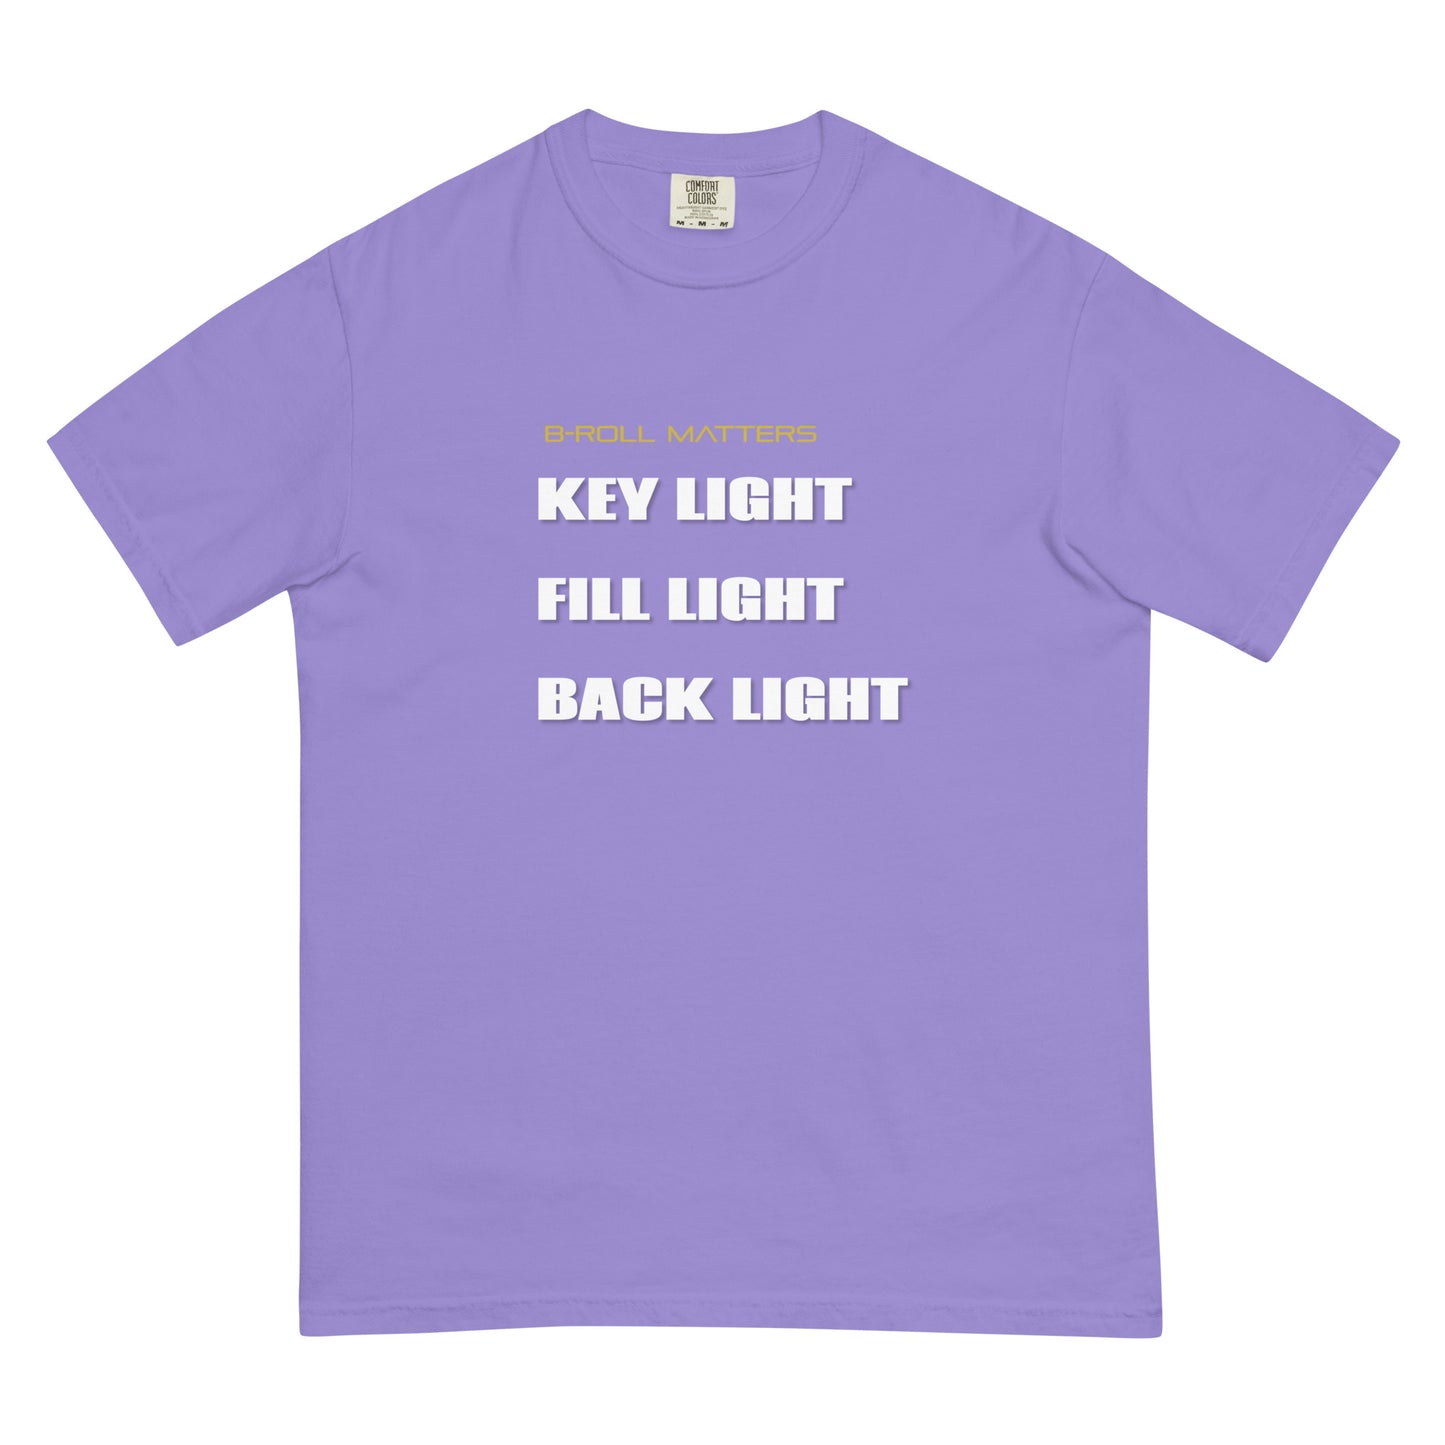 BRoll Matters 3-Point Lighting t-shirt